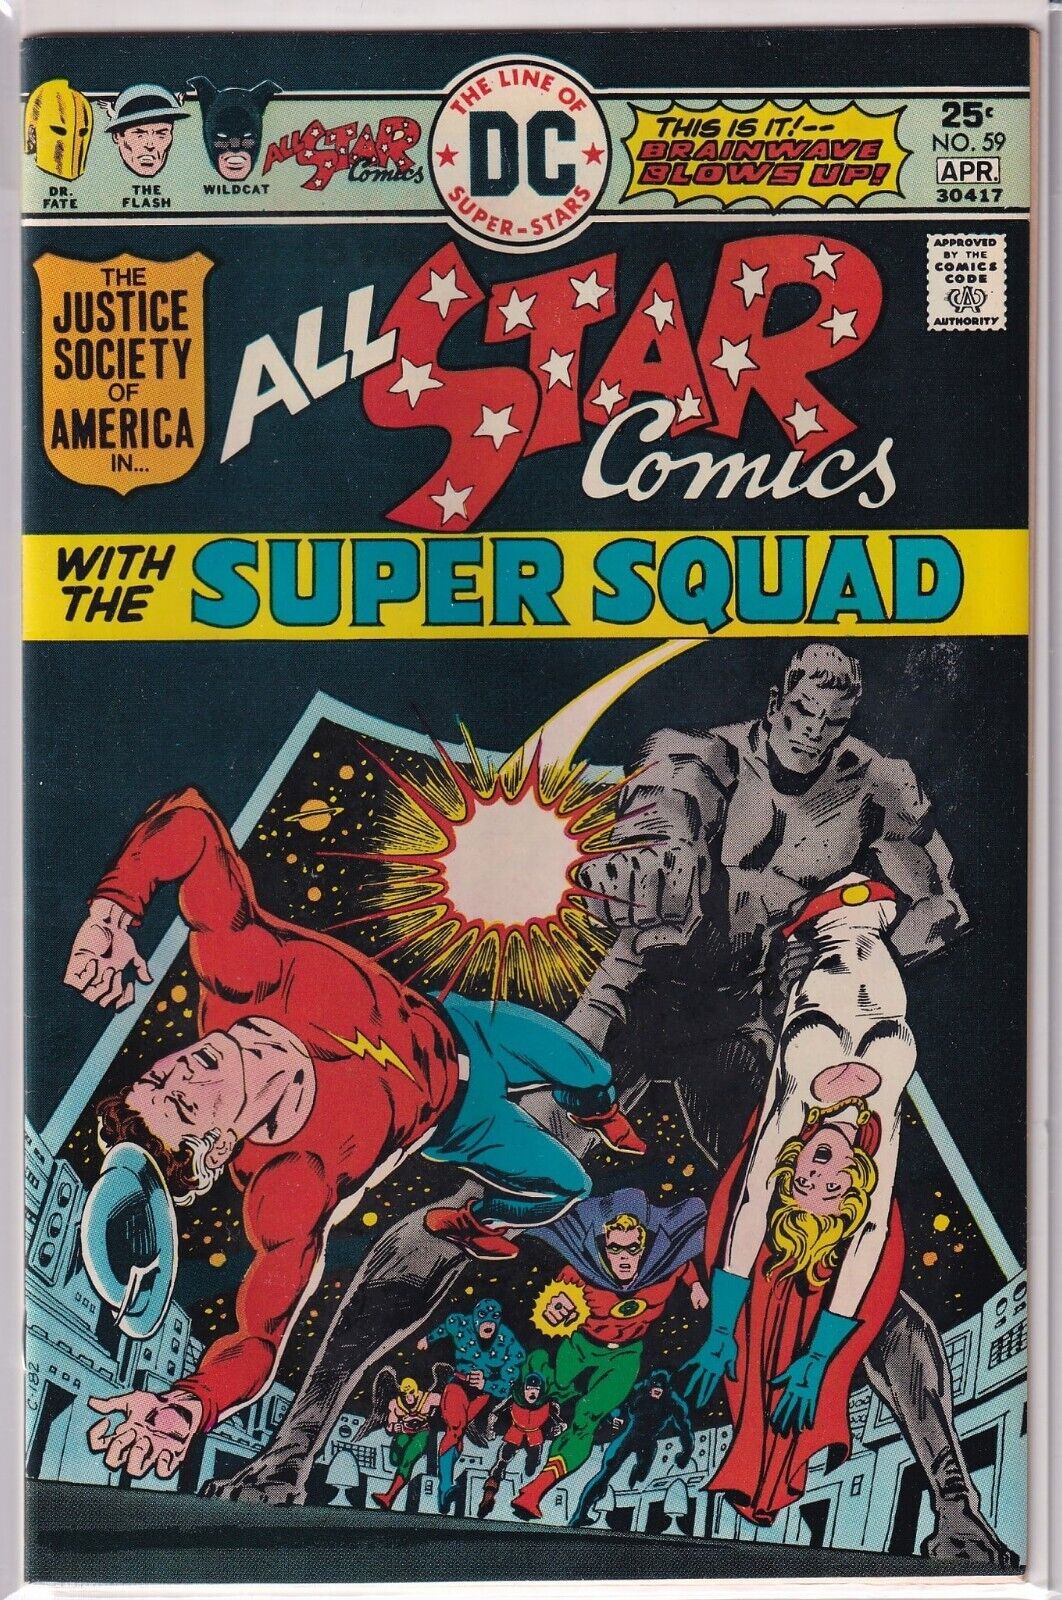 36863: DC Comics ALL STAR COMICS #59 VF Grade